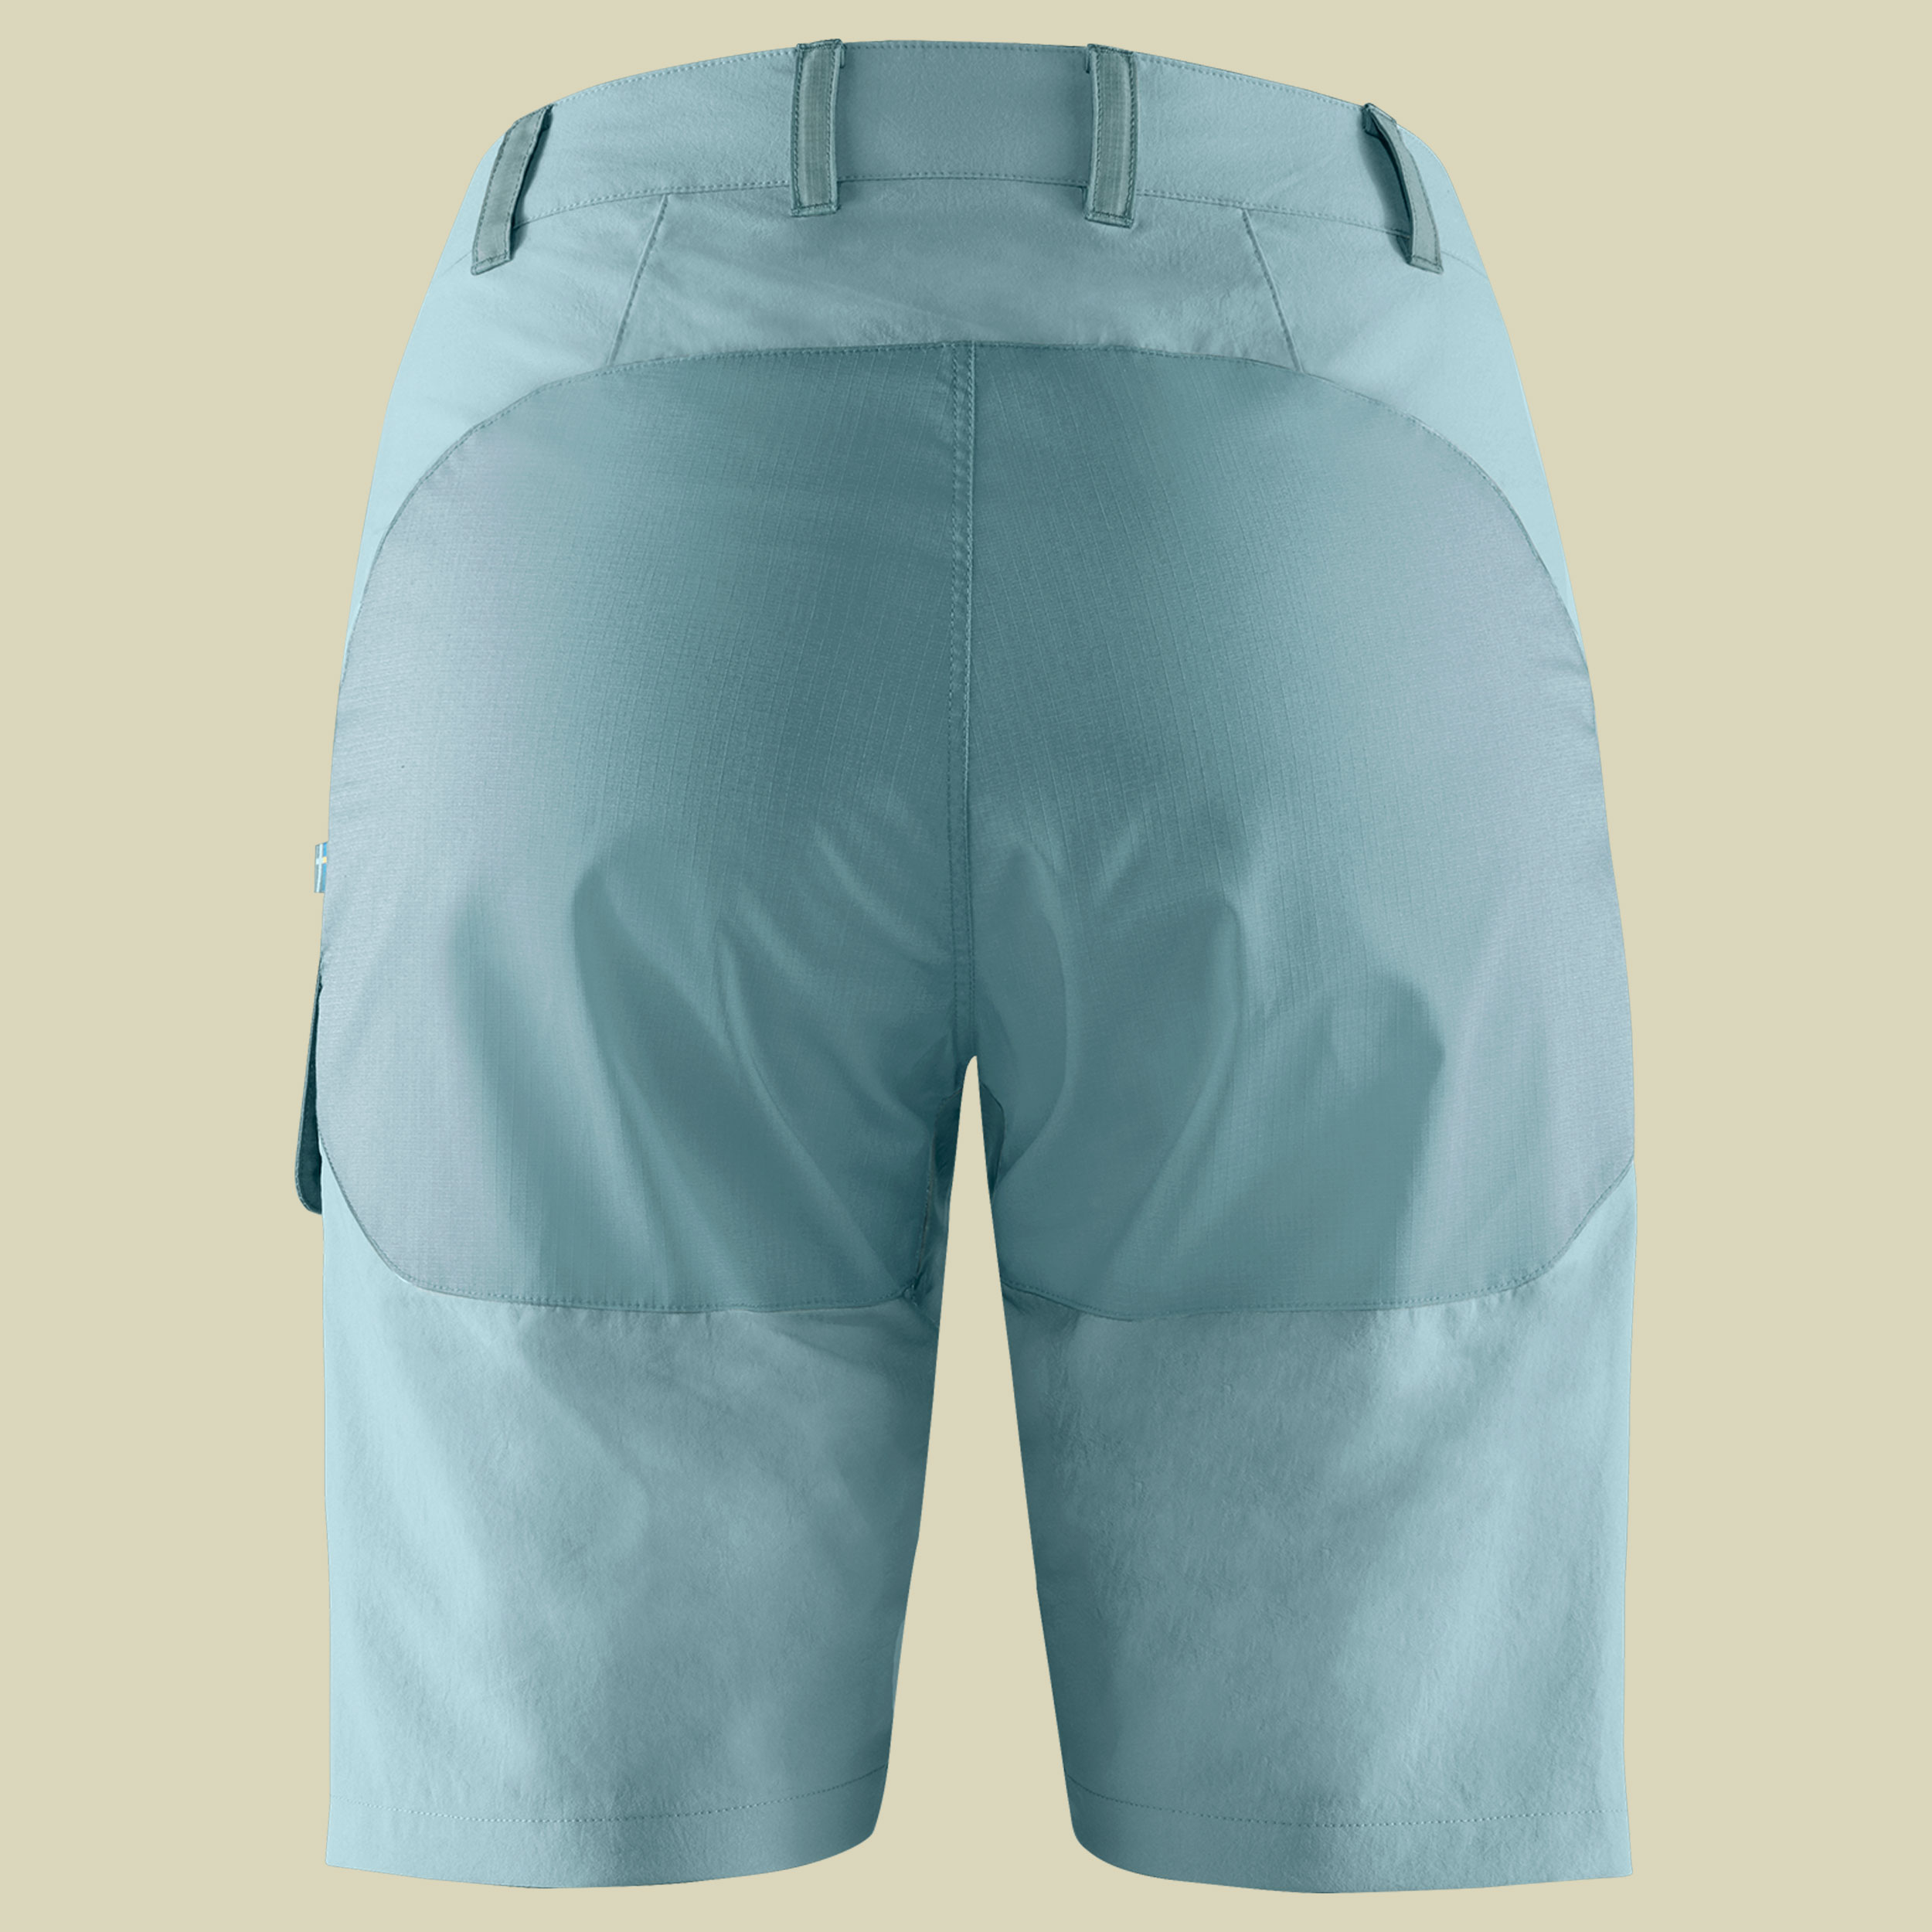 Abisko Midsummer Shorts Women Größe 42 Farbe mineral blue-clay blue